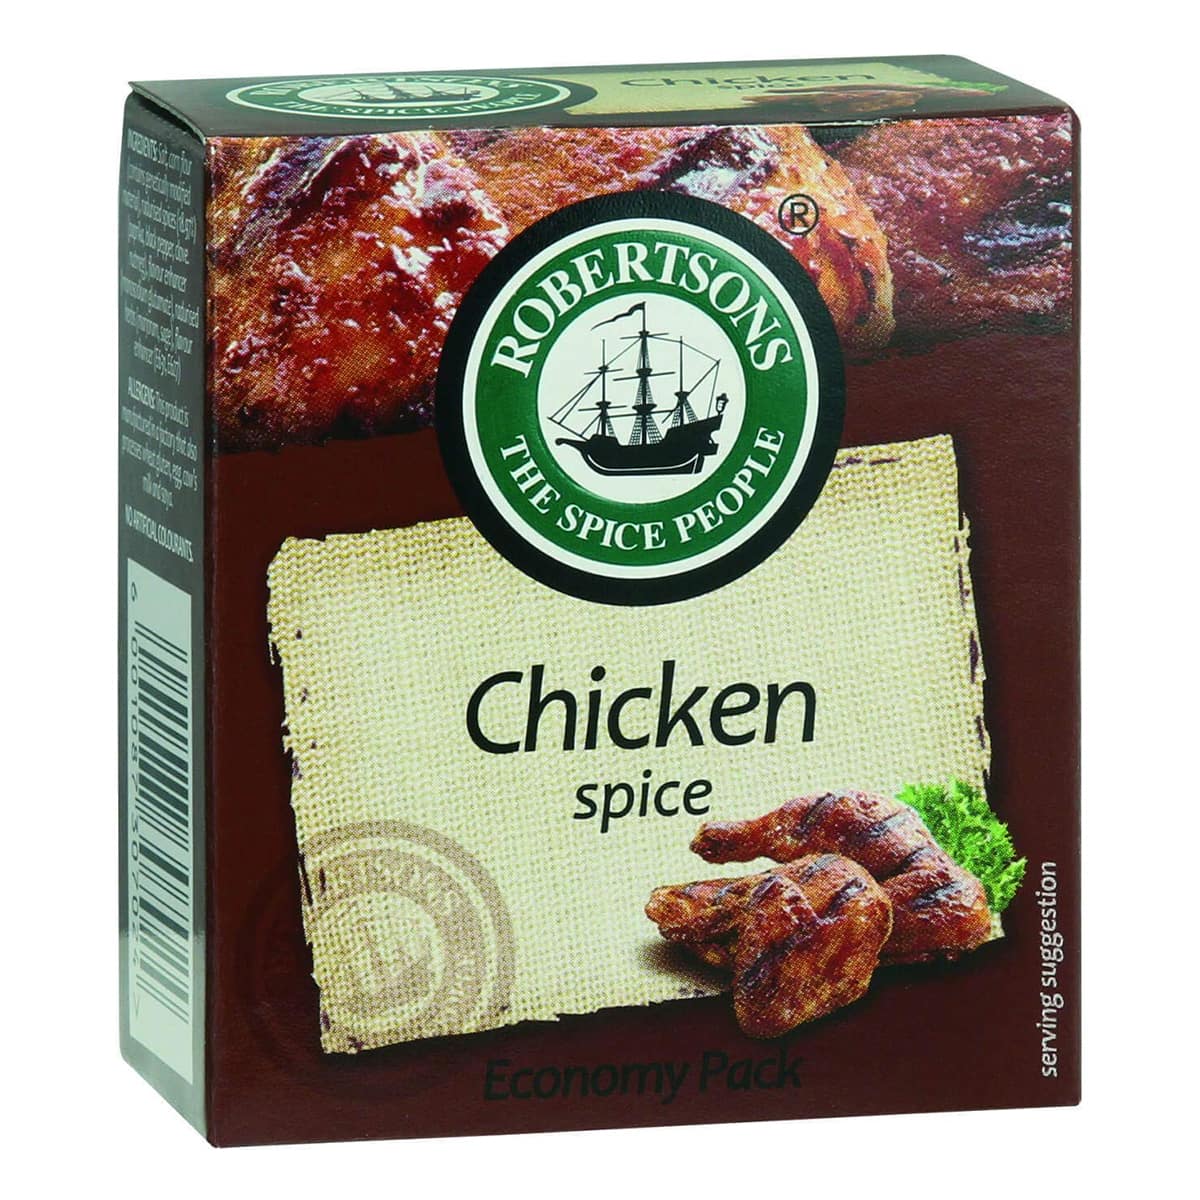 Buy Robertsons Chicken Spice - 84 gm